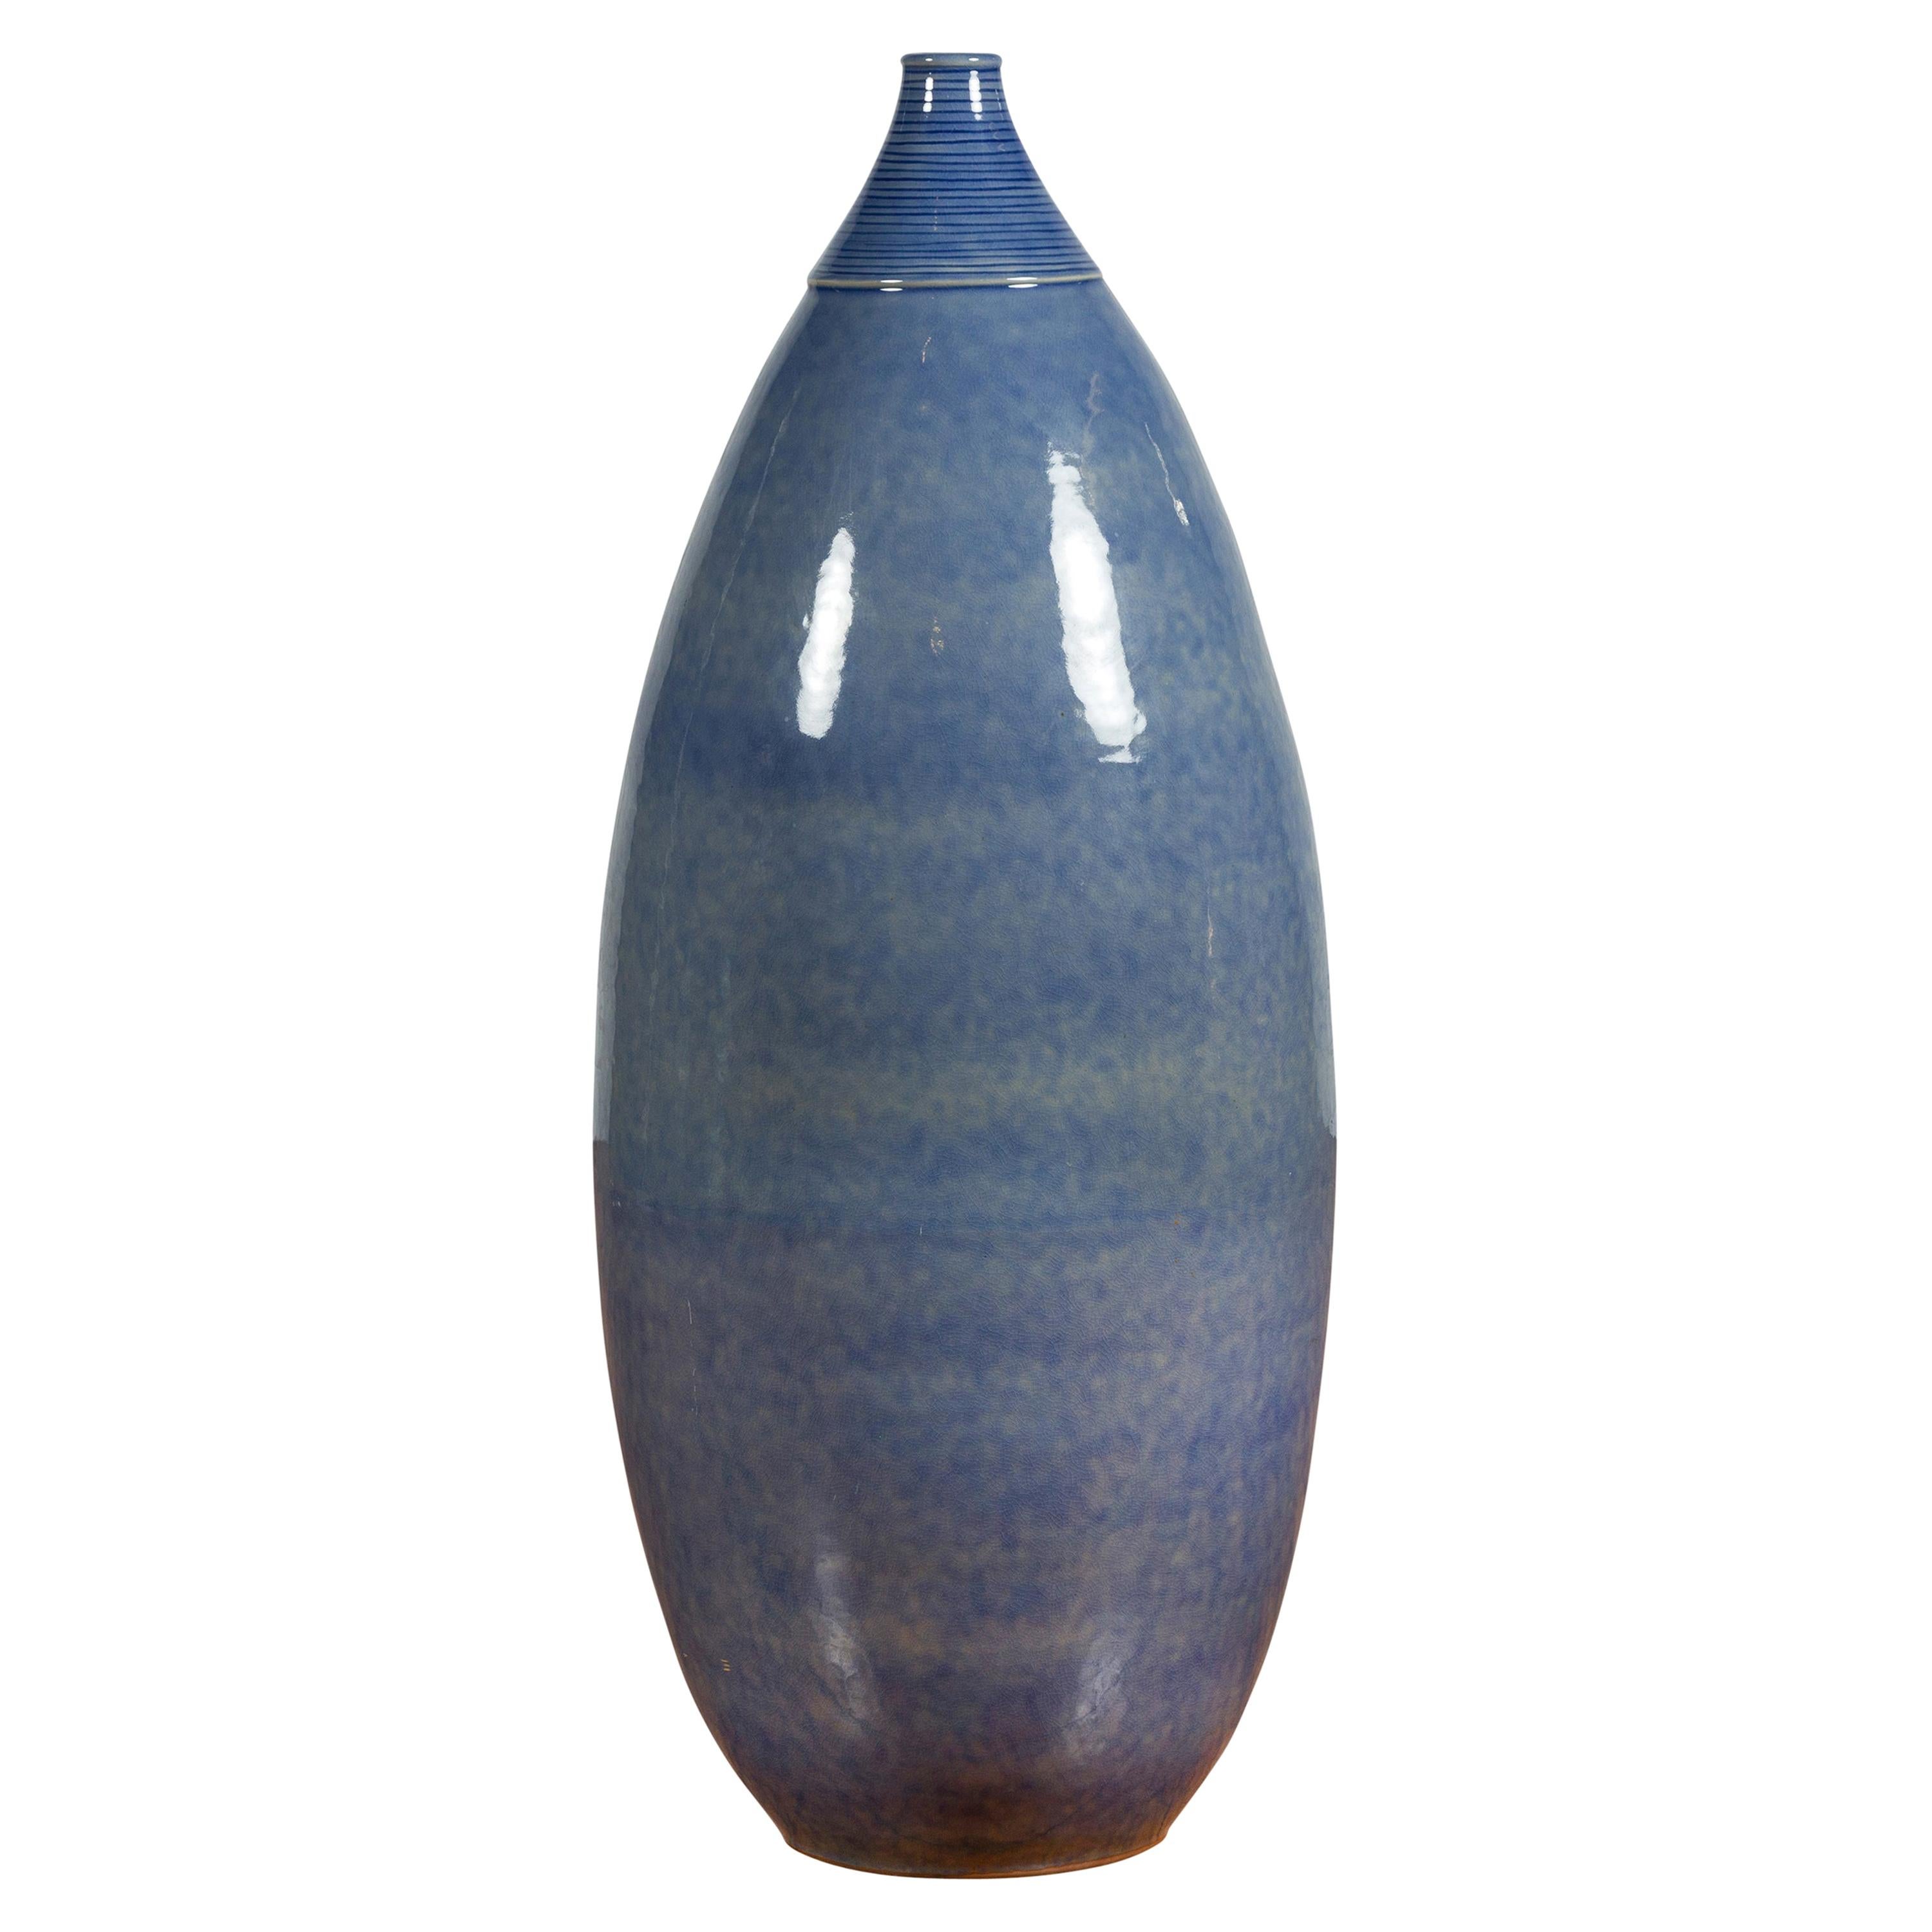 Grand vase contemporain bleu effilé thaïlandais Chiang Mai de la collection Prem